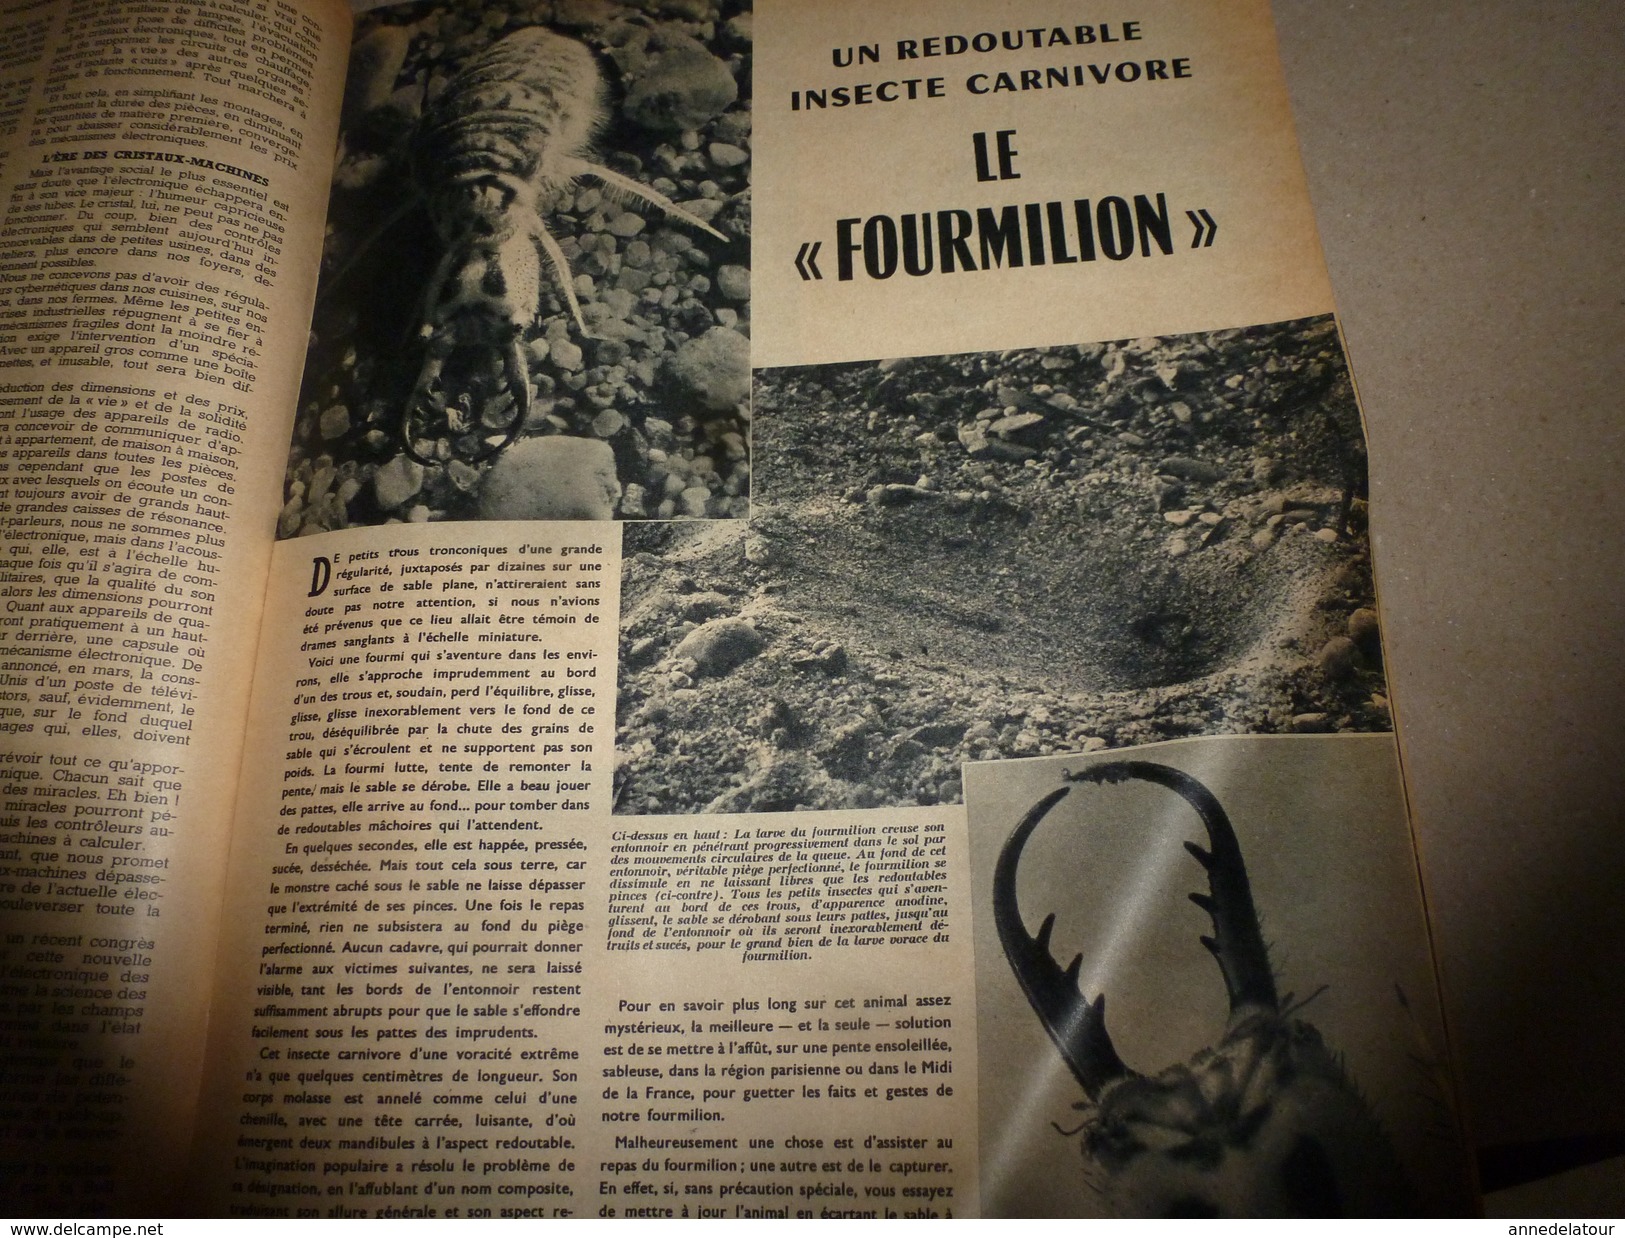 1955 SETA :Histoire du CHEVAL;Bombe A;Le fourmilion;Record vitesse sur rail;Transistors ;Les Centuriations romaines;etc